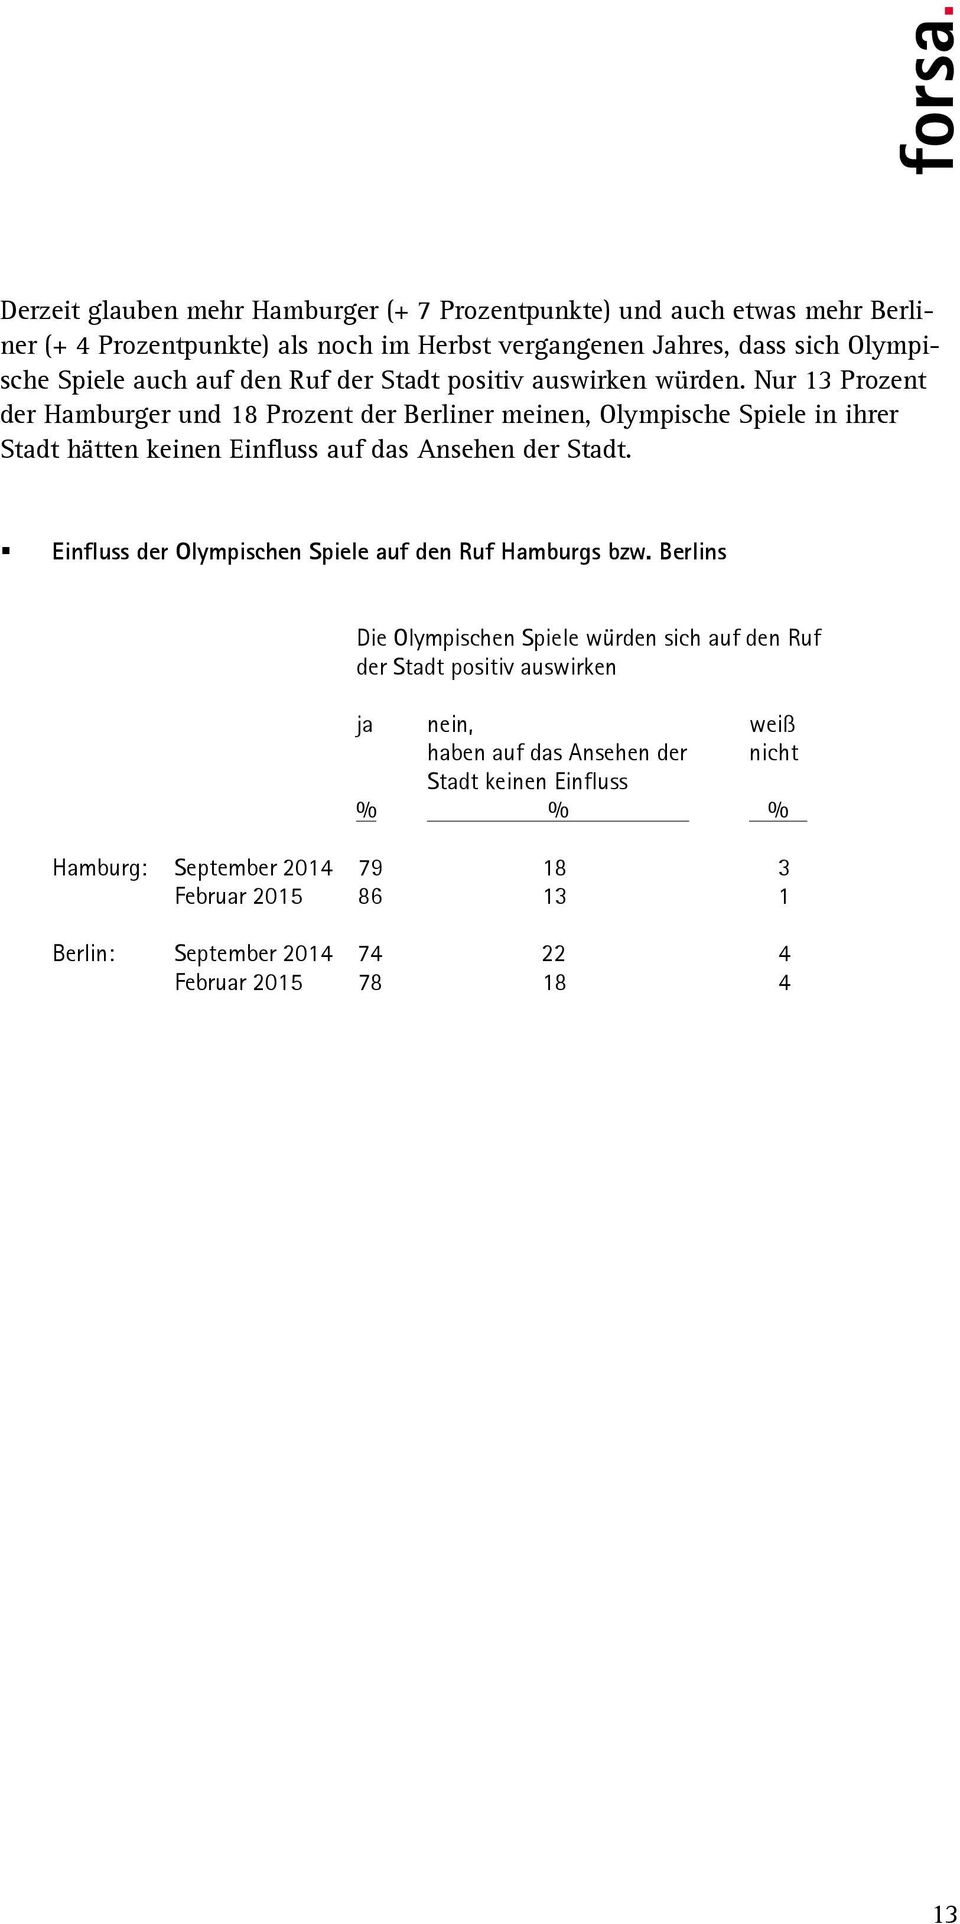 Nur 13 Prozent der Hamburger und 18 Prozent der Berliner meinen, Olympische Spiele in ihrer Stadt hätten keinen Einfluss auf das Ansehen der Stadt.